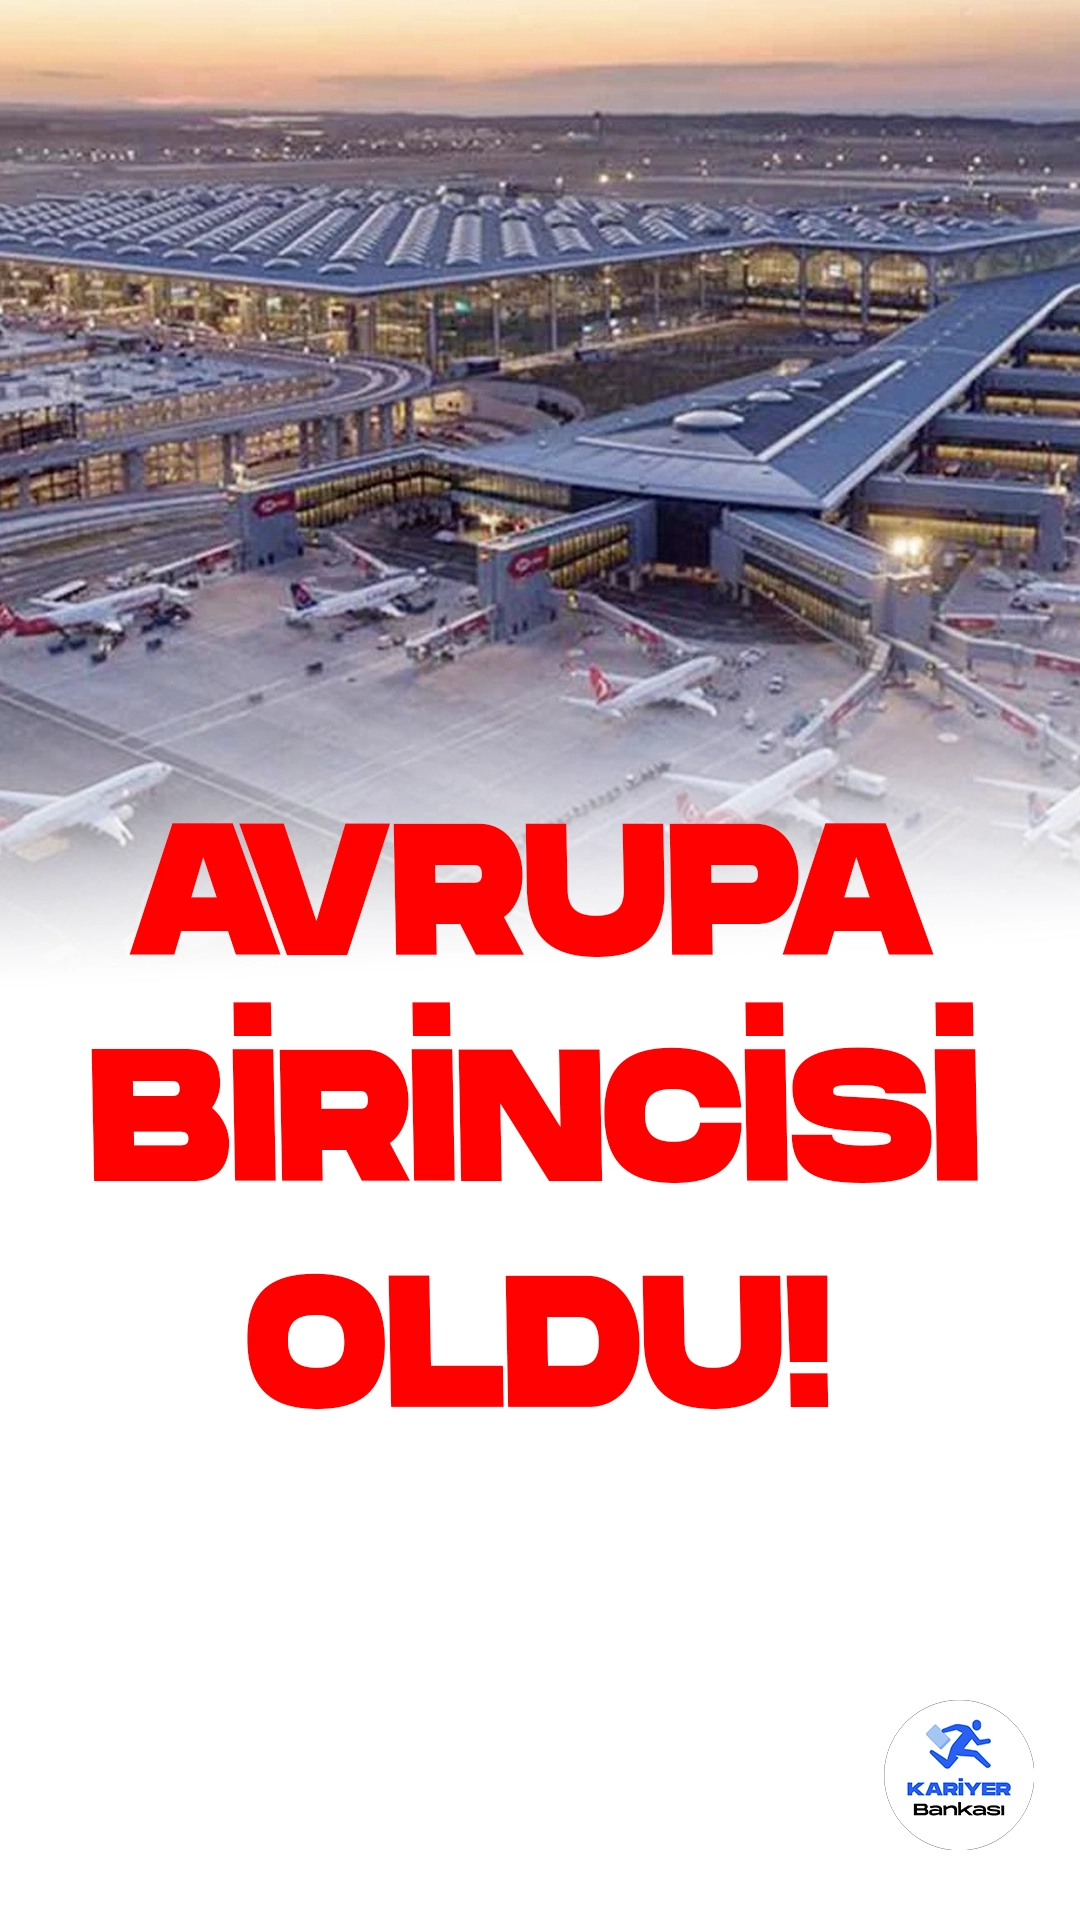 İstanbul Havalimanı Avrupa Lideri Oldu.Ulaştırma ve Altyapı Bakanı Abdulkadir Uraloğlu, Avrupa Hava Seyrüsefer Emniyeti Teşkilatı (EUROCONTROL) verilerine dayanarak yaptığı açıklamada, İstanbul Havalimanı'nın 21-27 Ağustos tarihleri arasındaki performansını paylaştı.